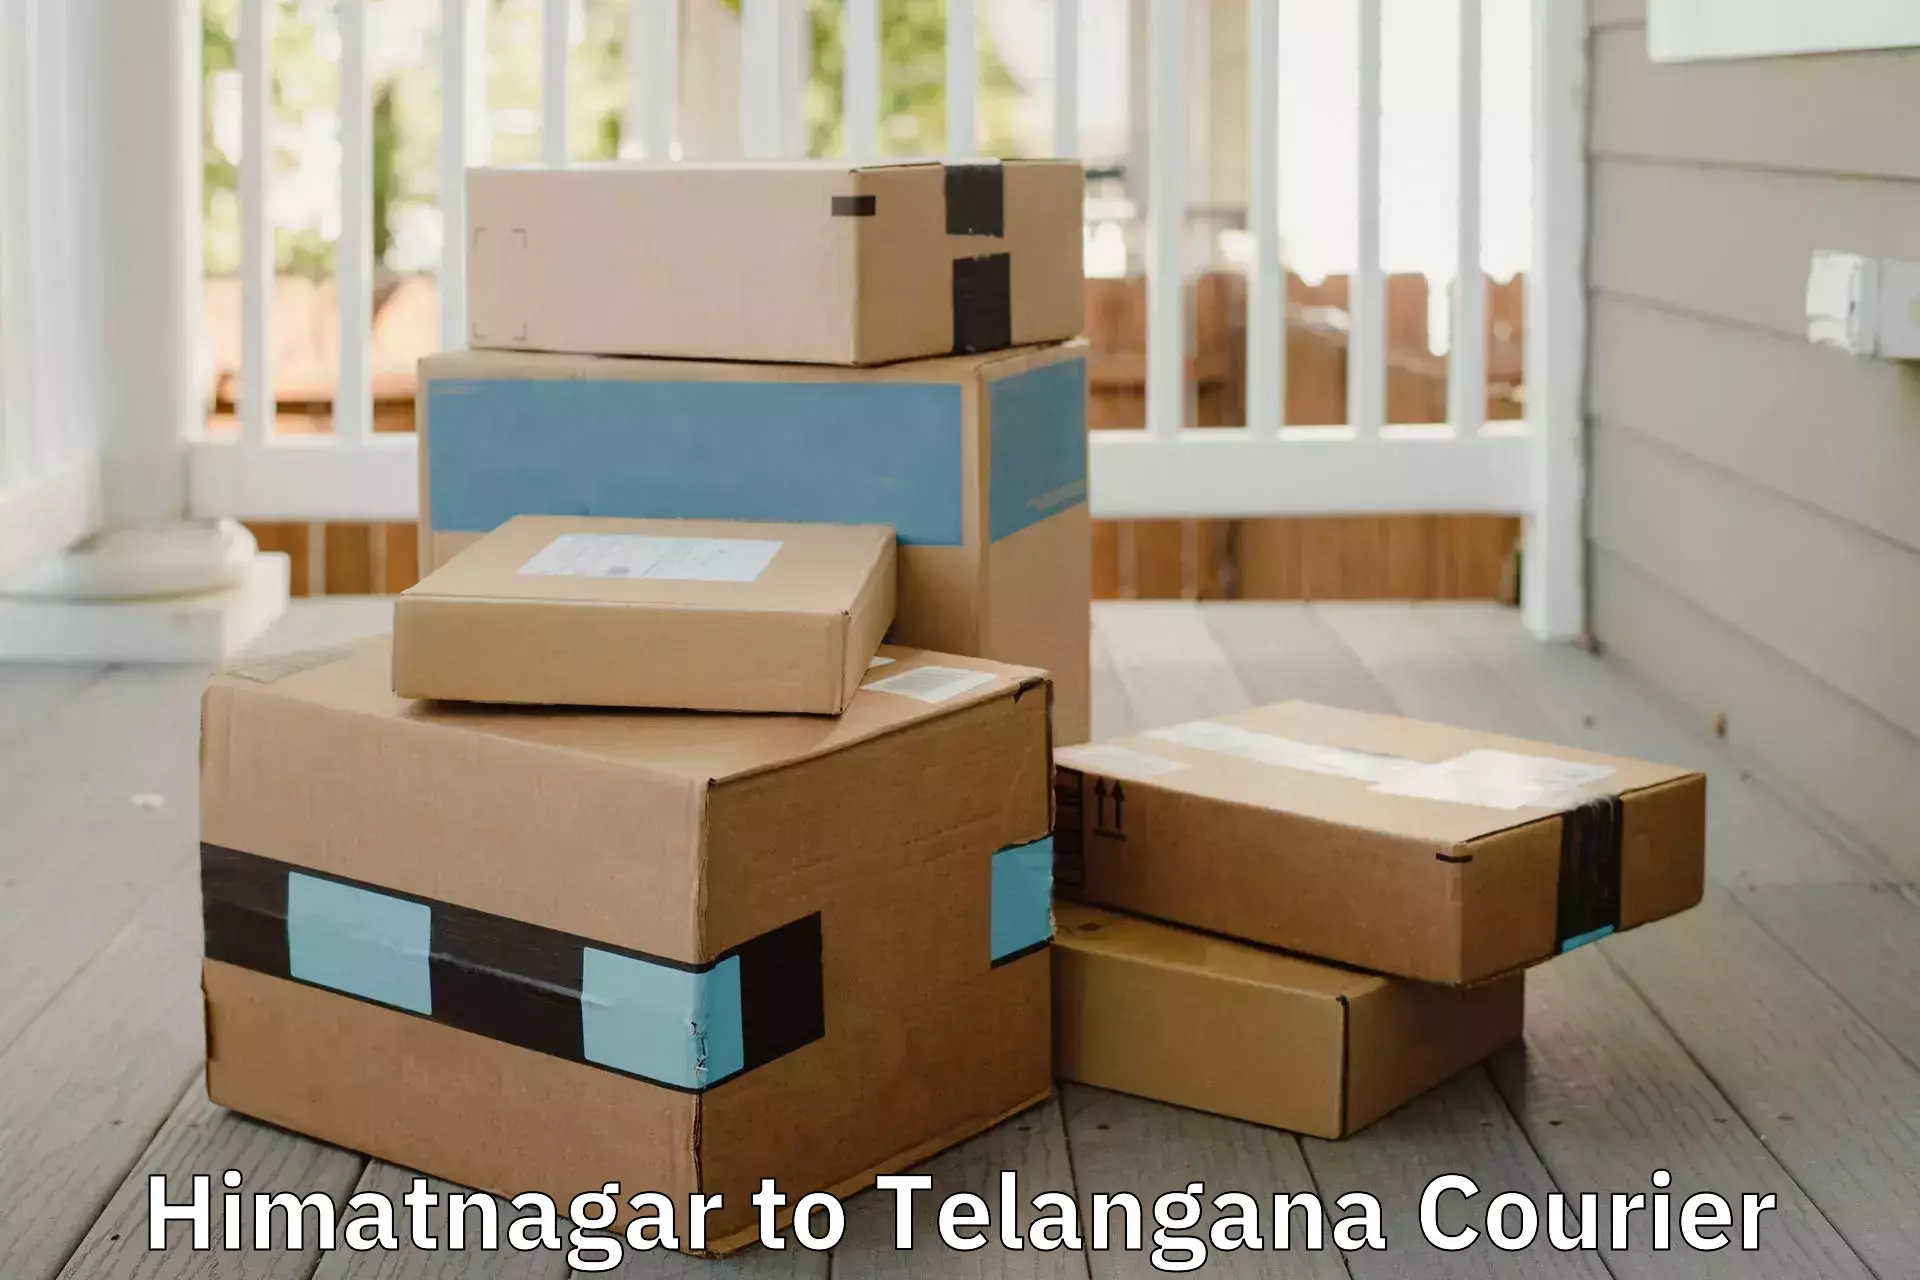 Professional goods transport Himatnagar to Telangana